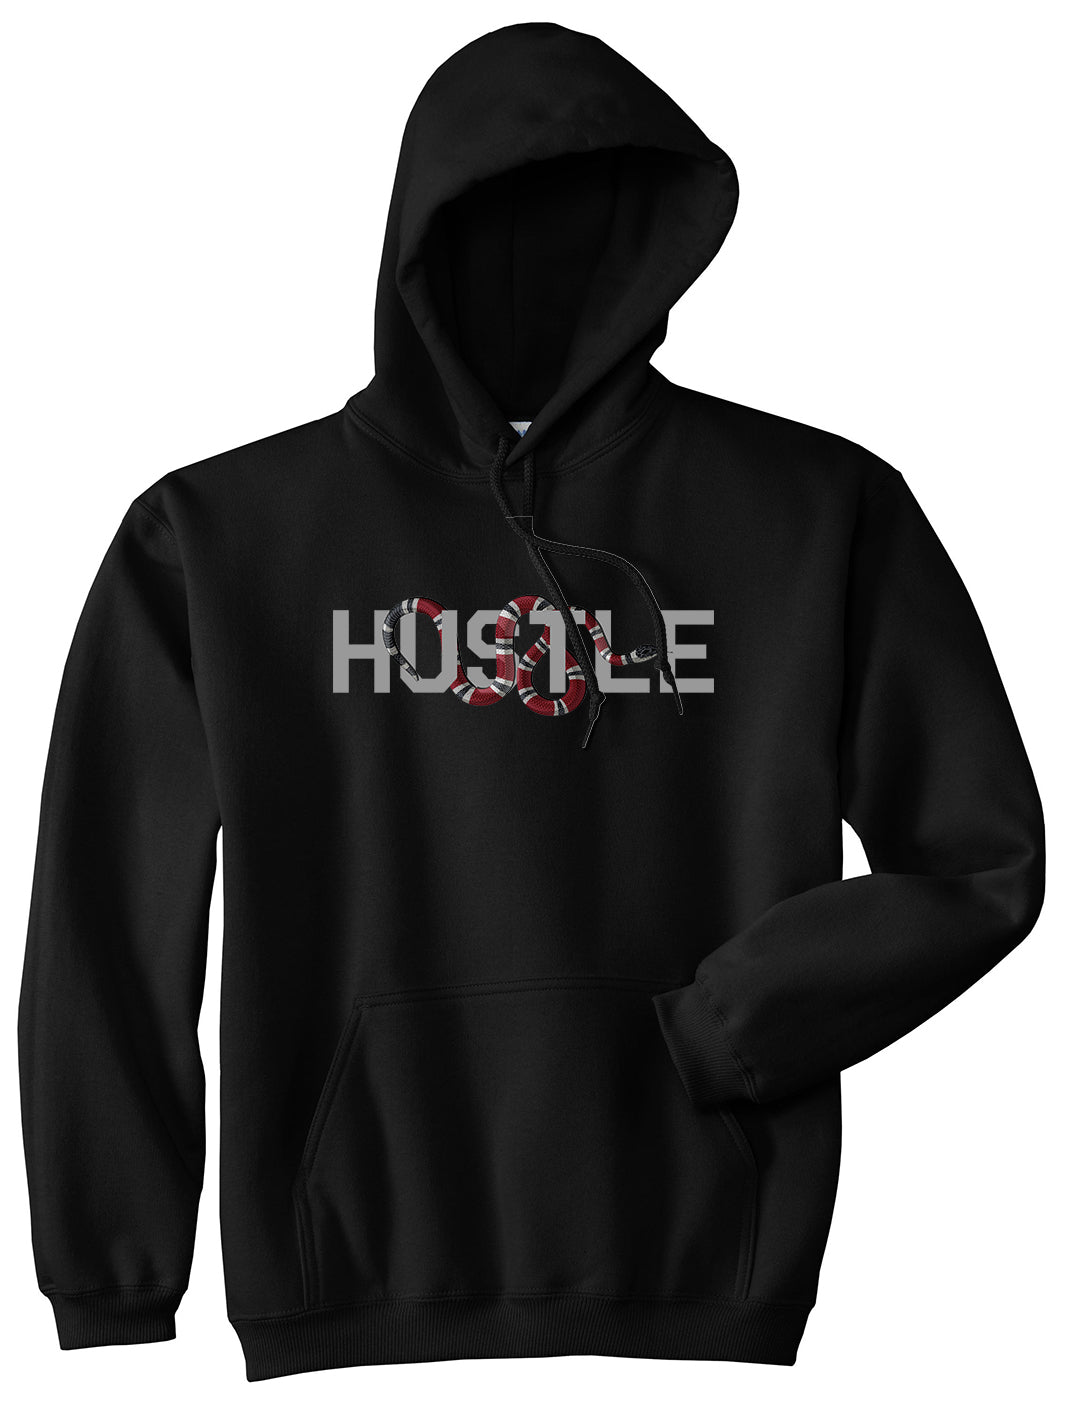 Hustle Snake Mens Pullover Hoodie Black by Kings Of NY